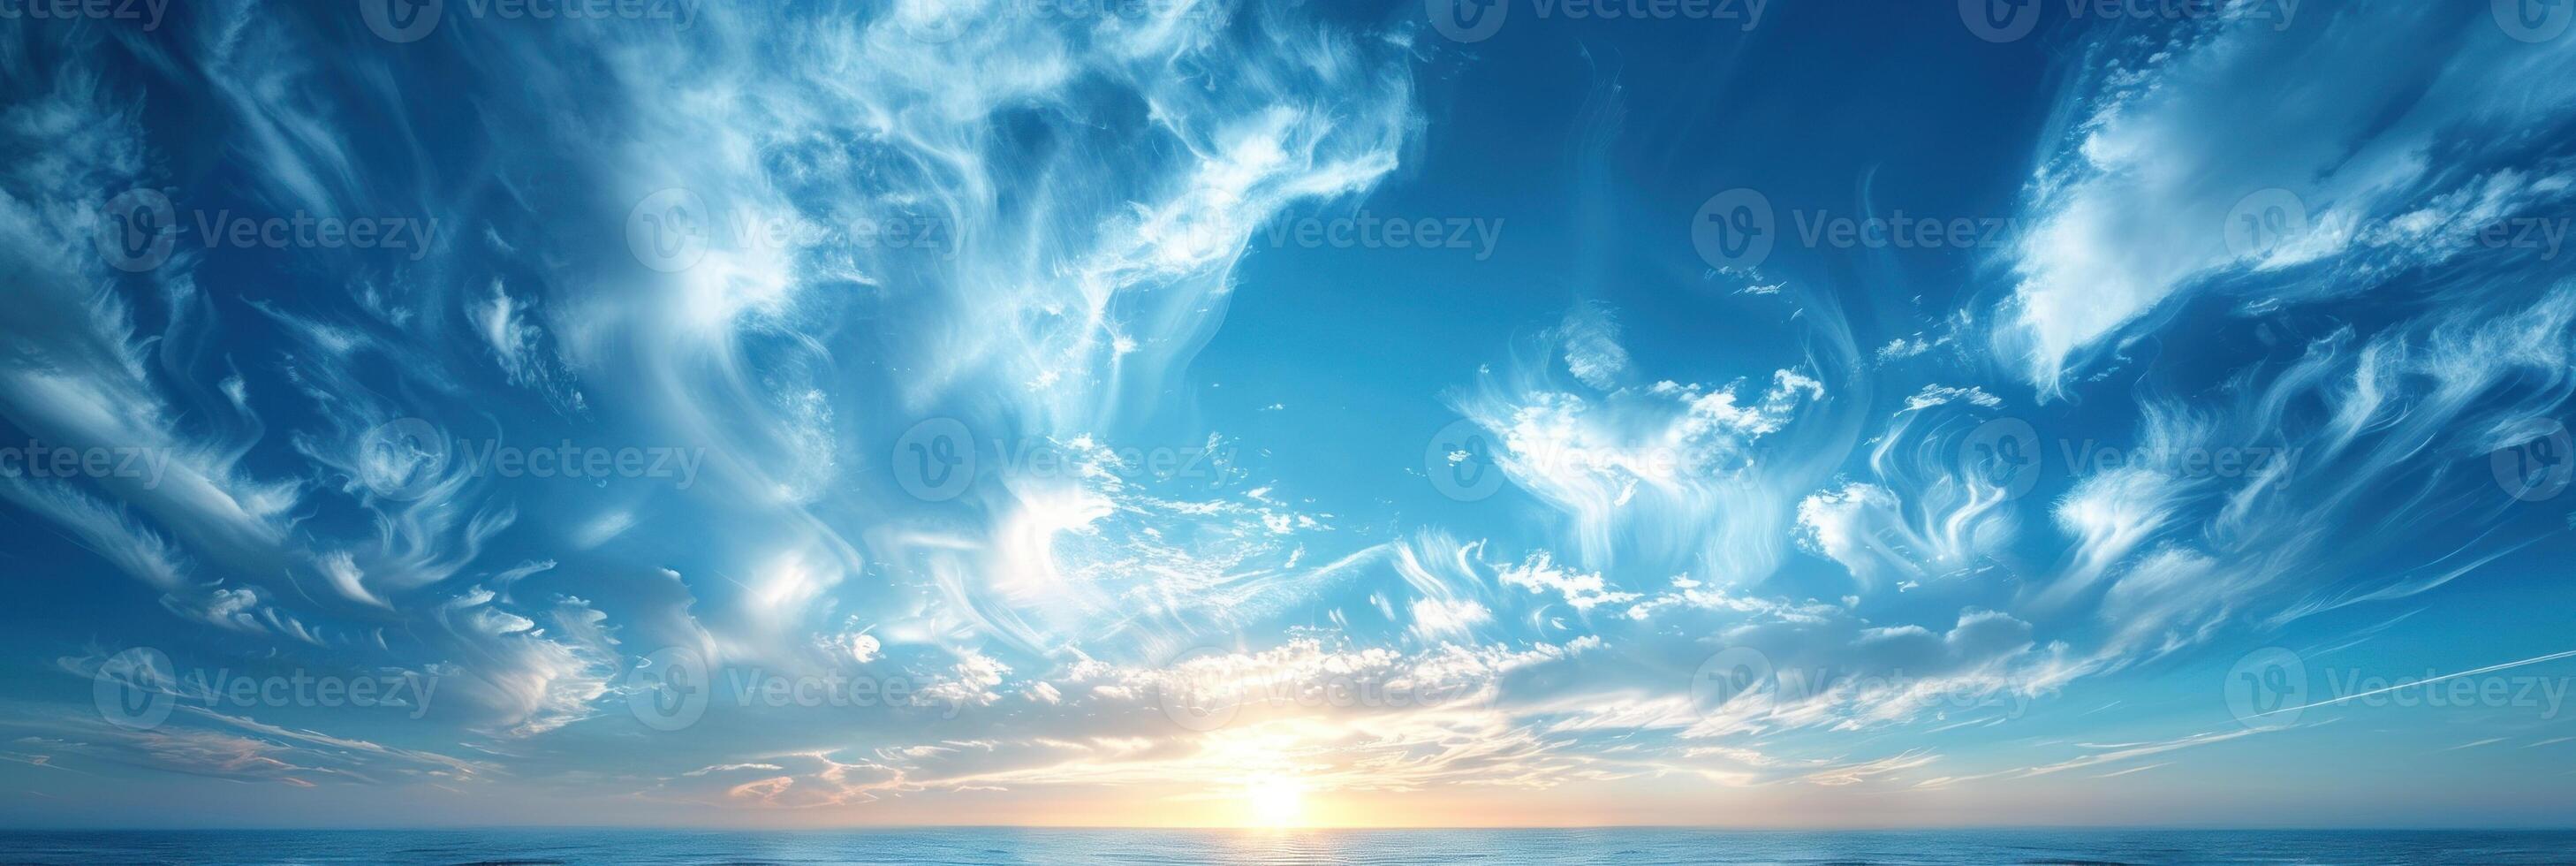 Soli raggi rompere attraverso nuvole, illuminante oceano acque foto